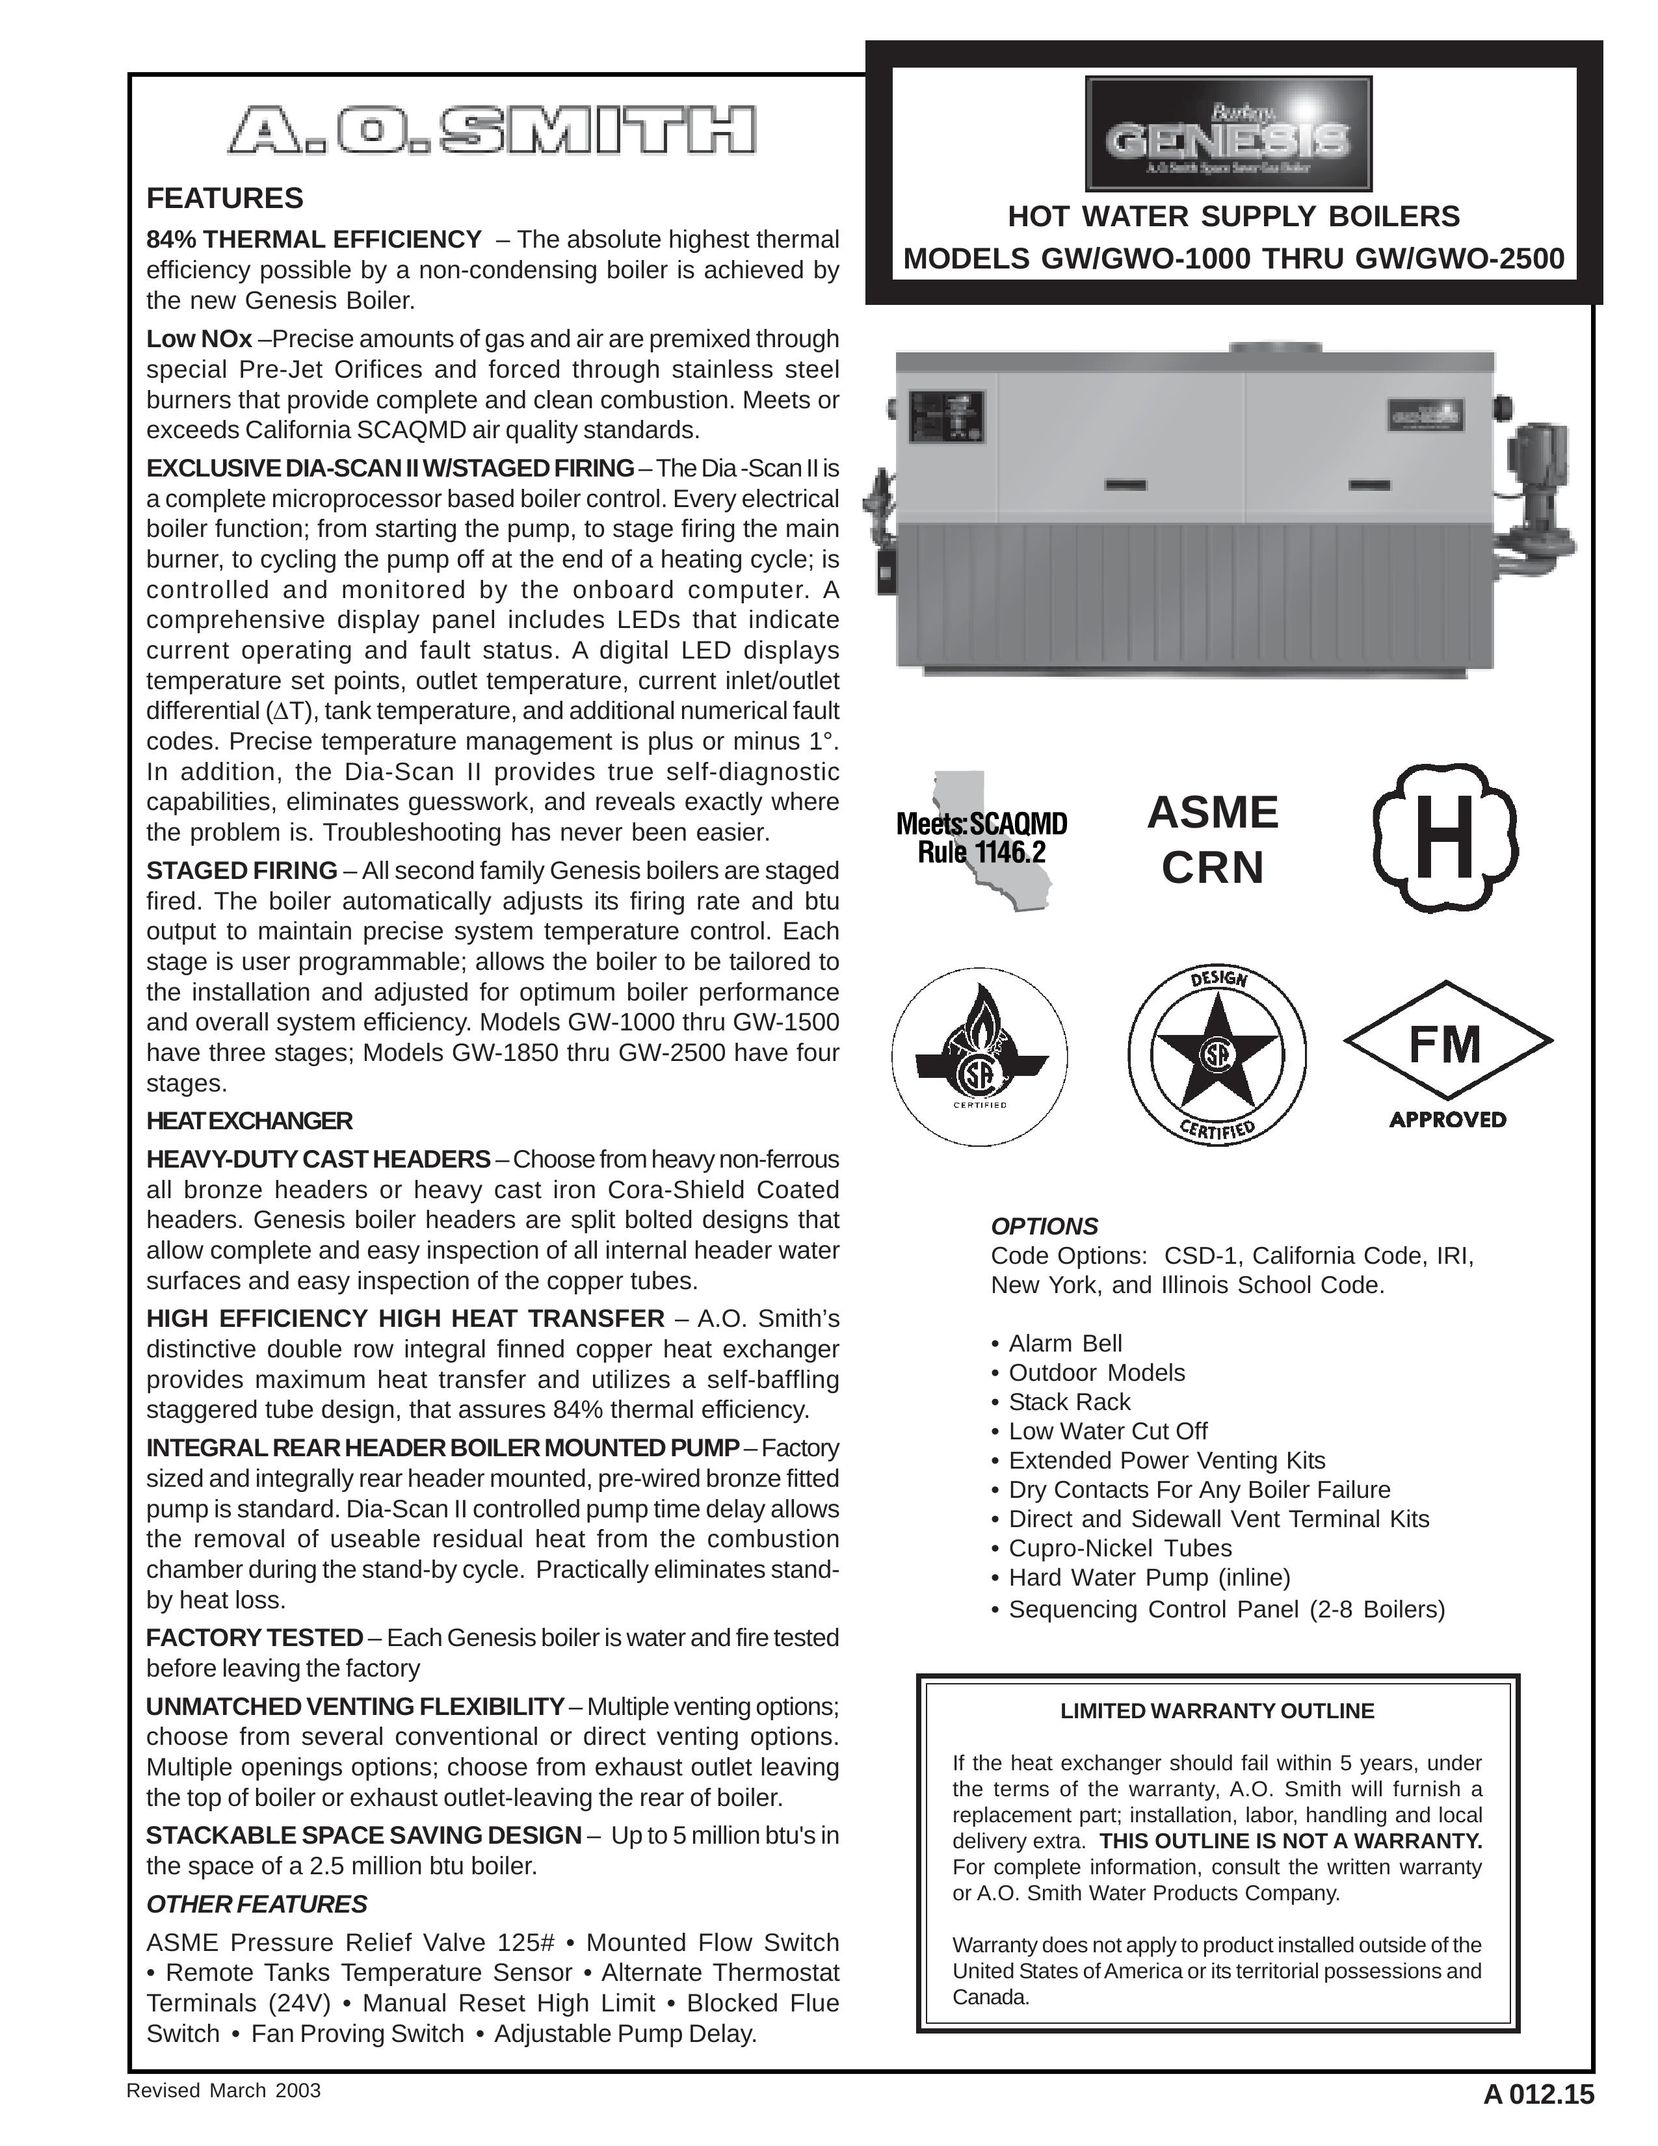 A.O. Smith GW/GWO-2500 Boiler User Manual